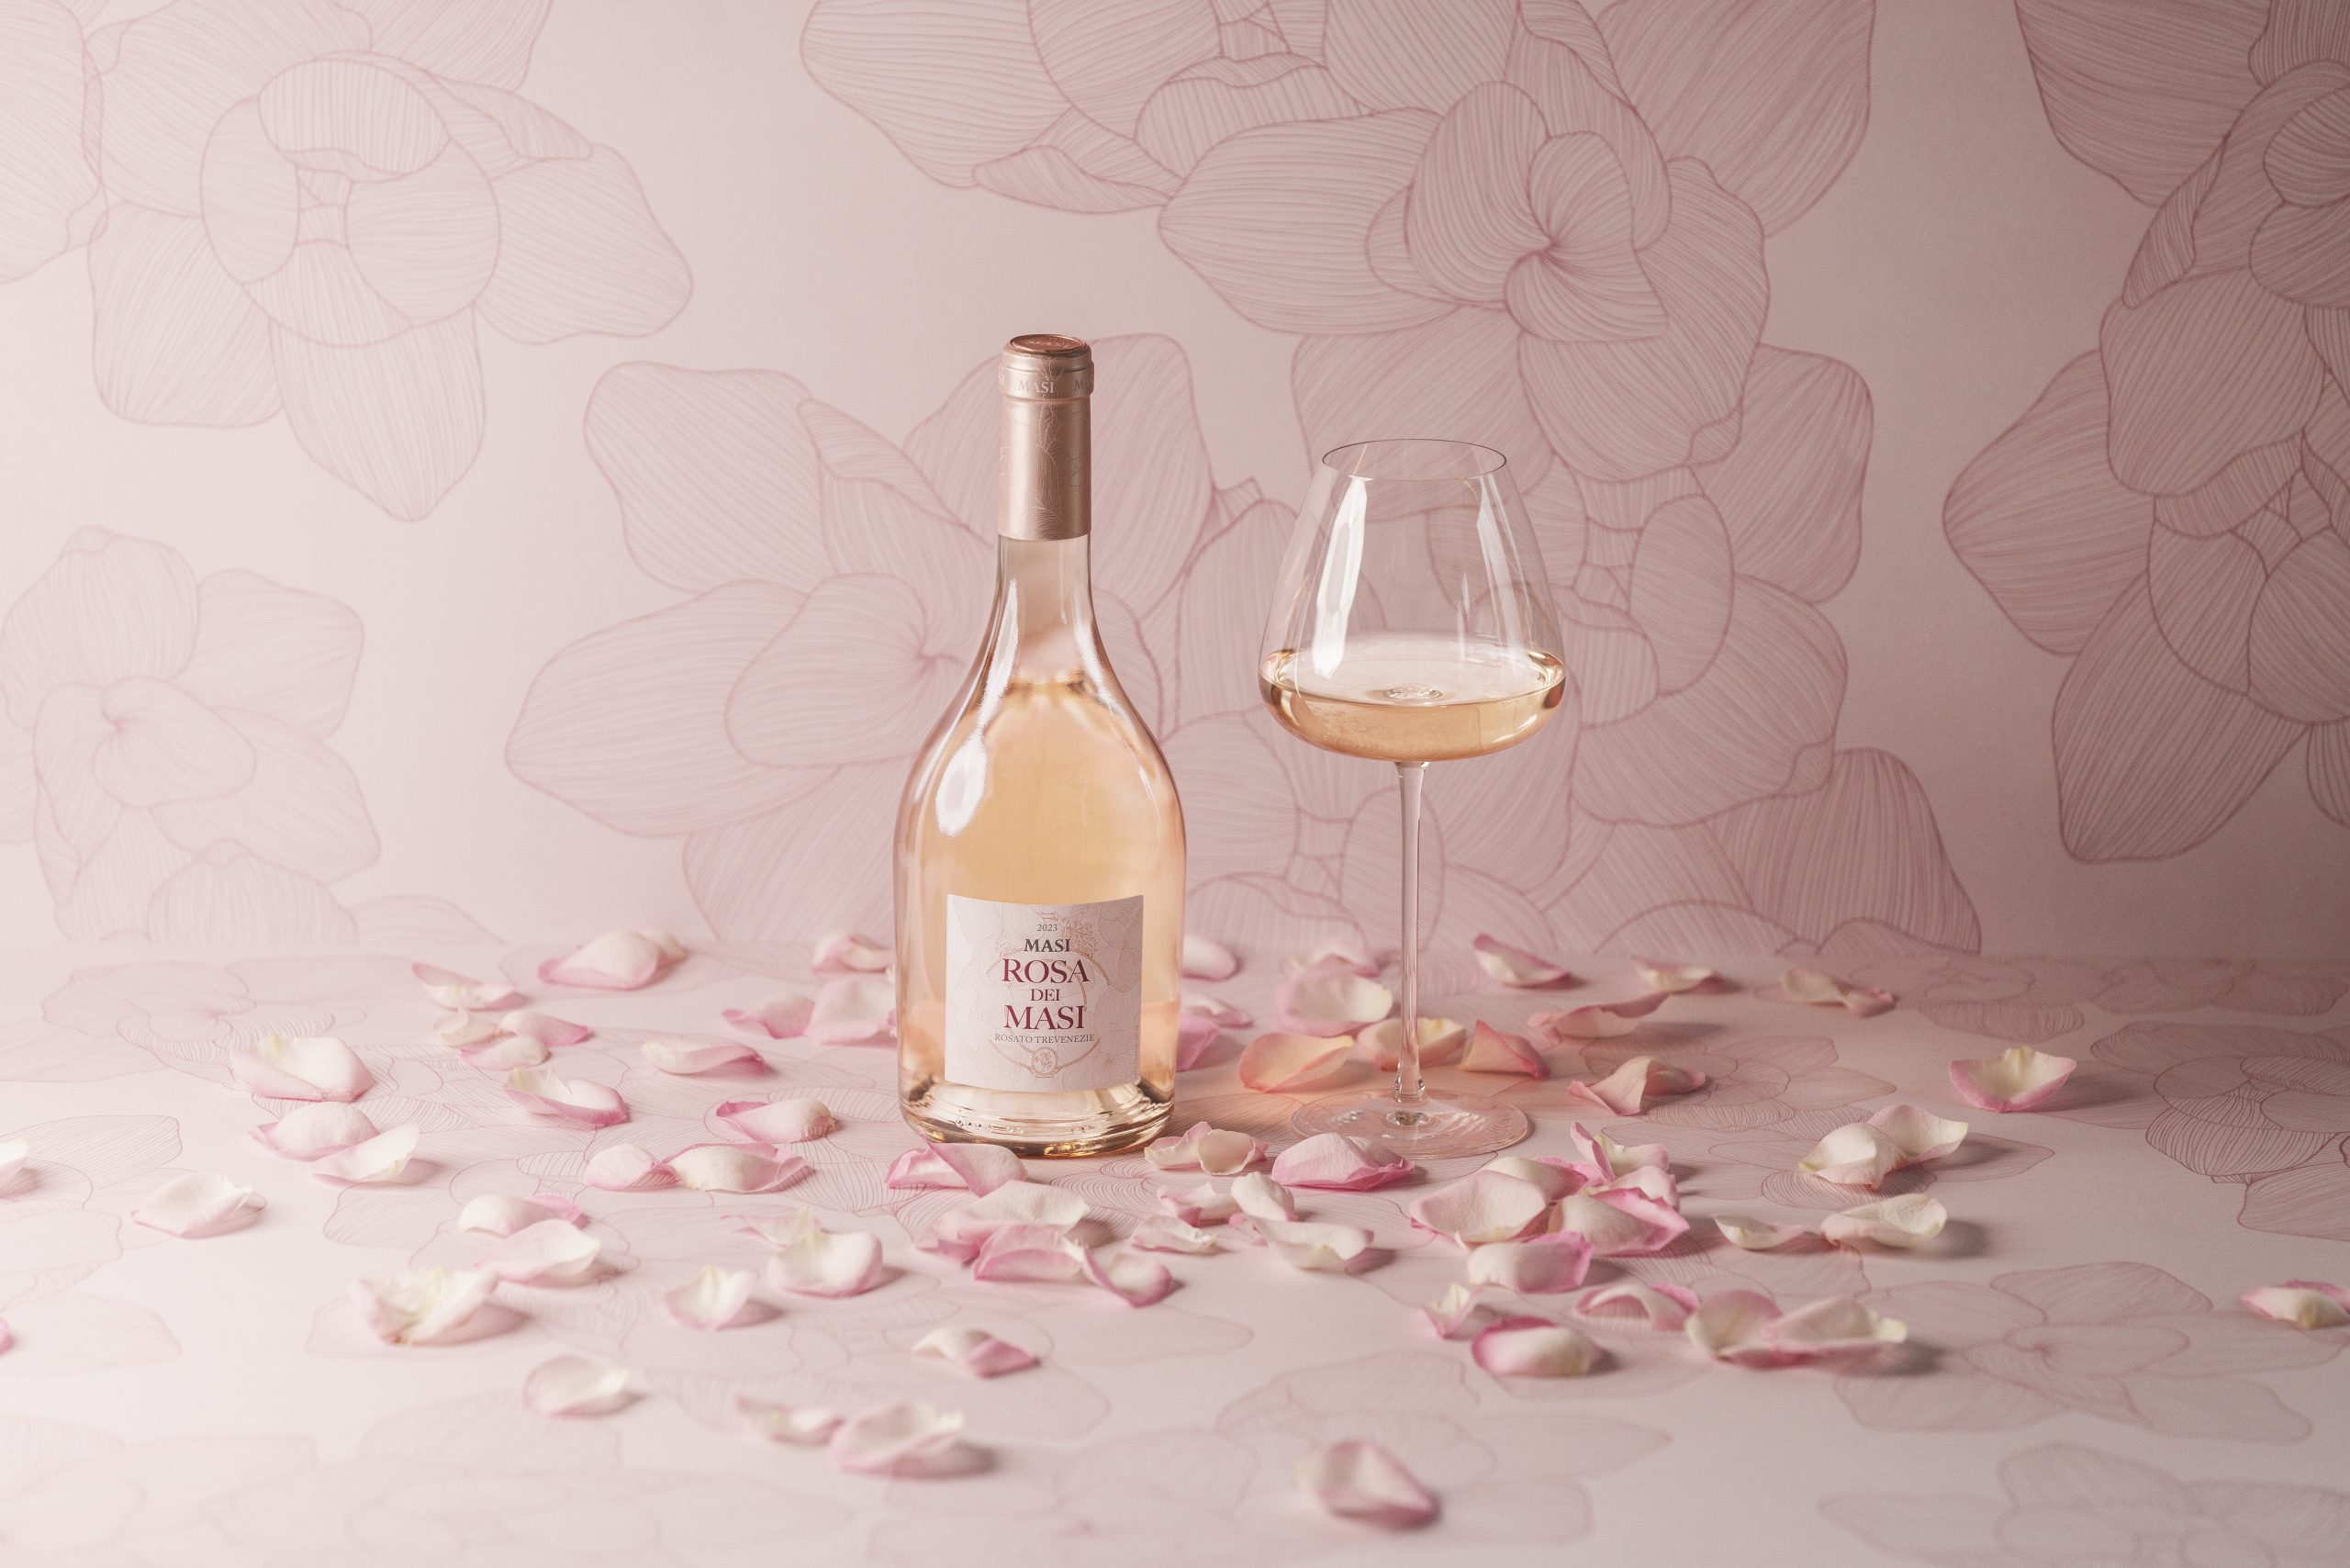 Une bouteille du nouveau Rosa dei Masi est posée à côté d'un verre de vin. Des pétales de rose sont éparpillés et la toile de fond rose pâle présente les mêmes motifs de roses dessinés à l'encre que la bouteille.